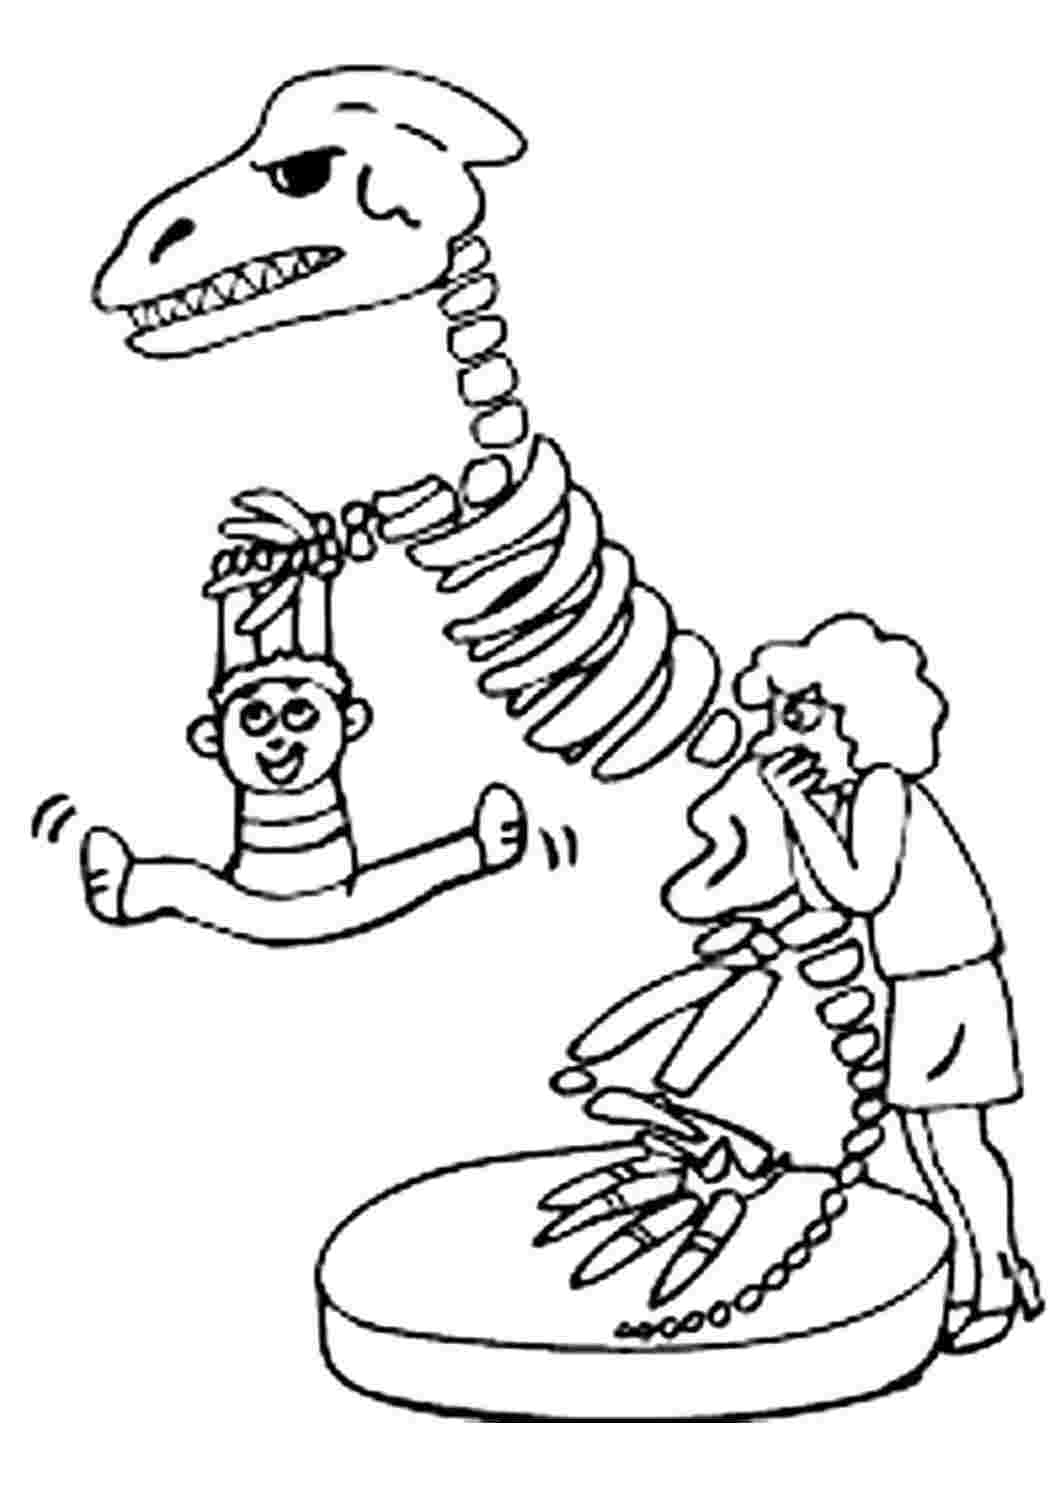 Скелет динозавра раскраска